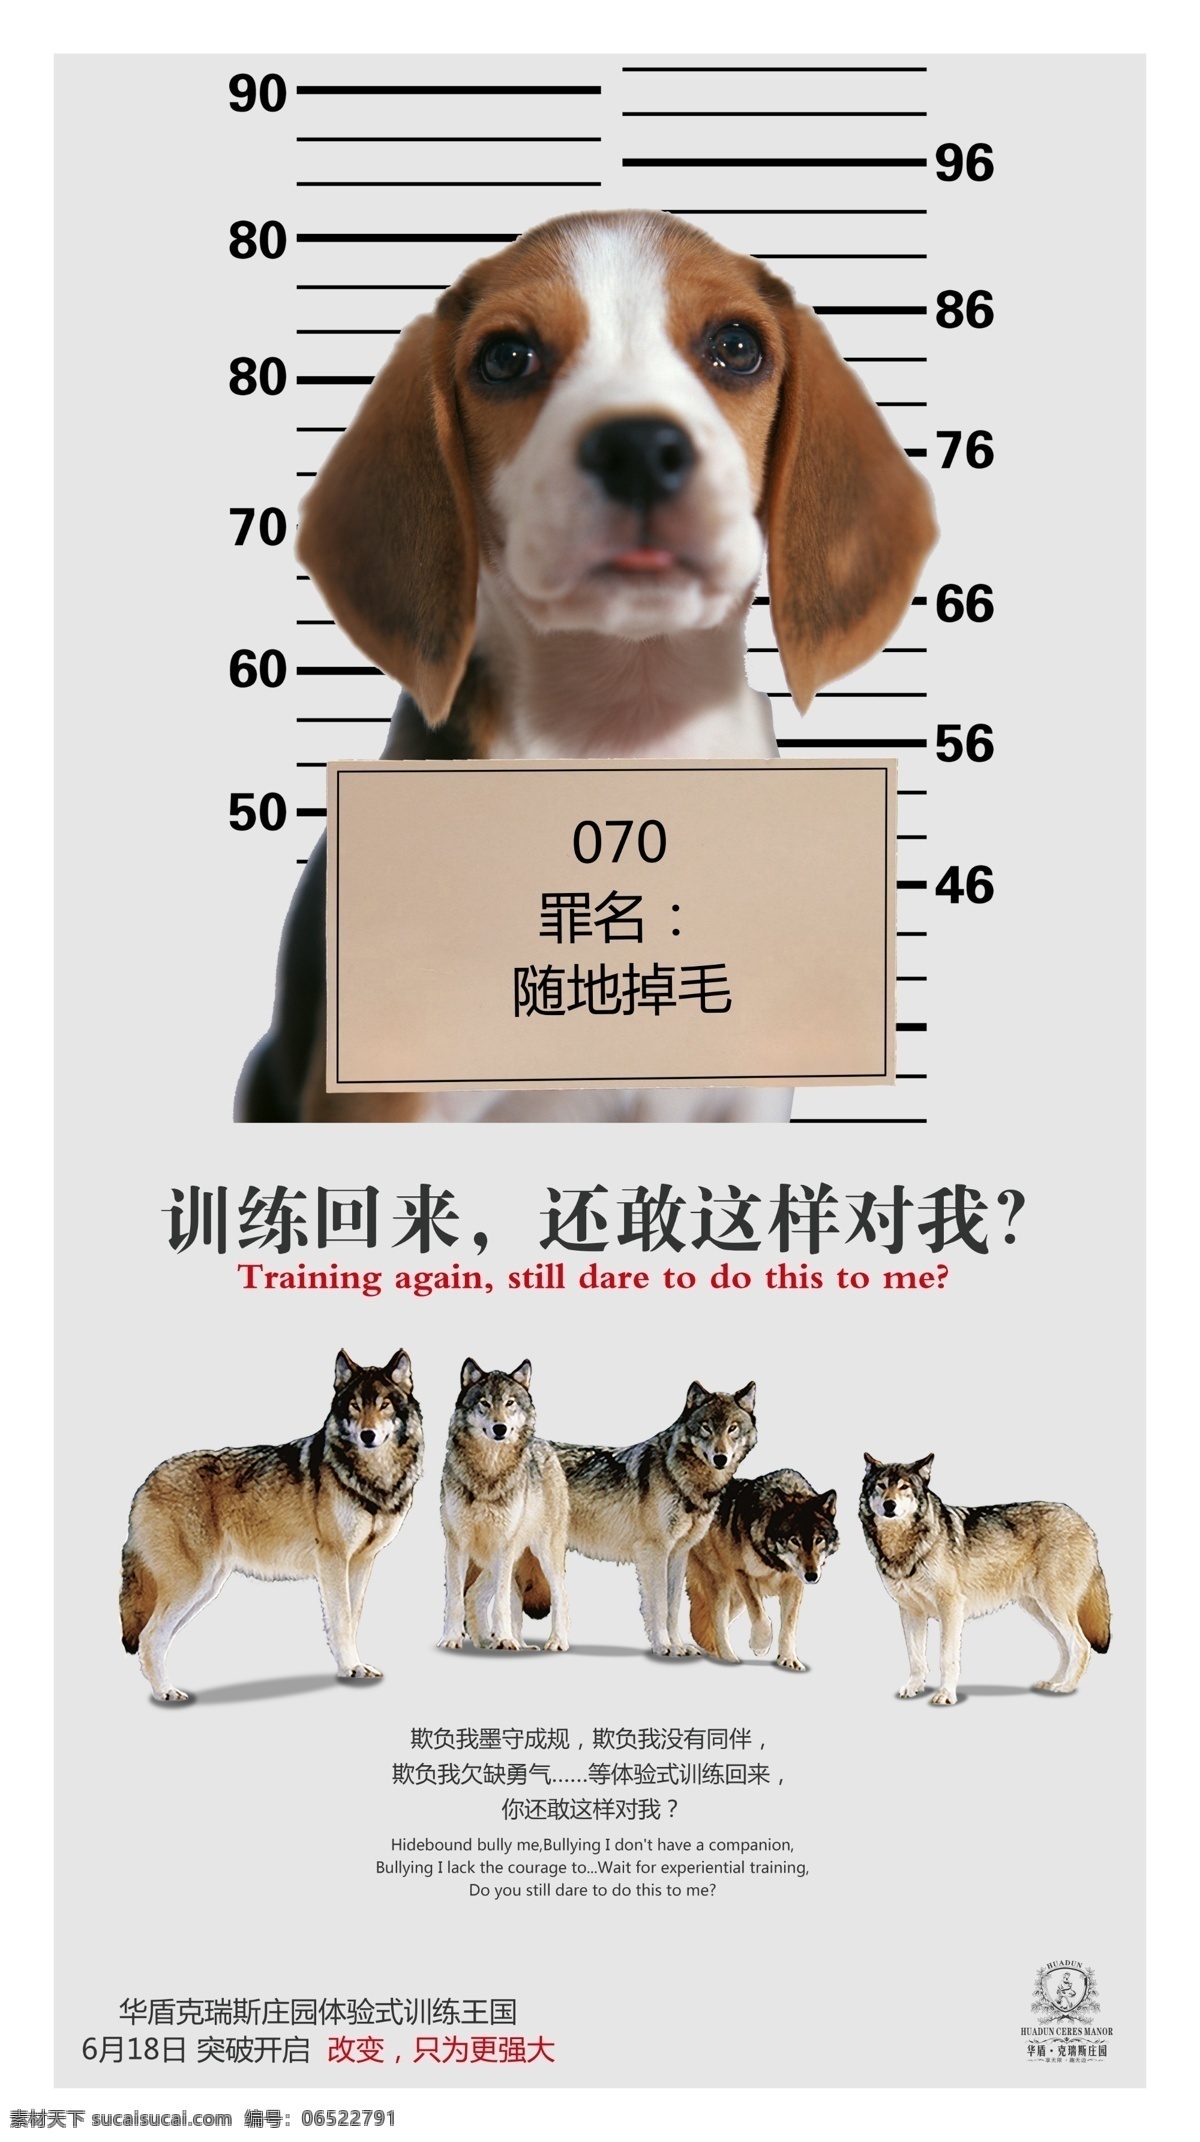 创意 广告 宠物狗 创意广告 狗 户外拓展 狼 狼群 训练 海报 psd源文件